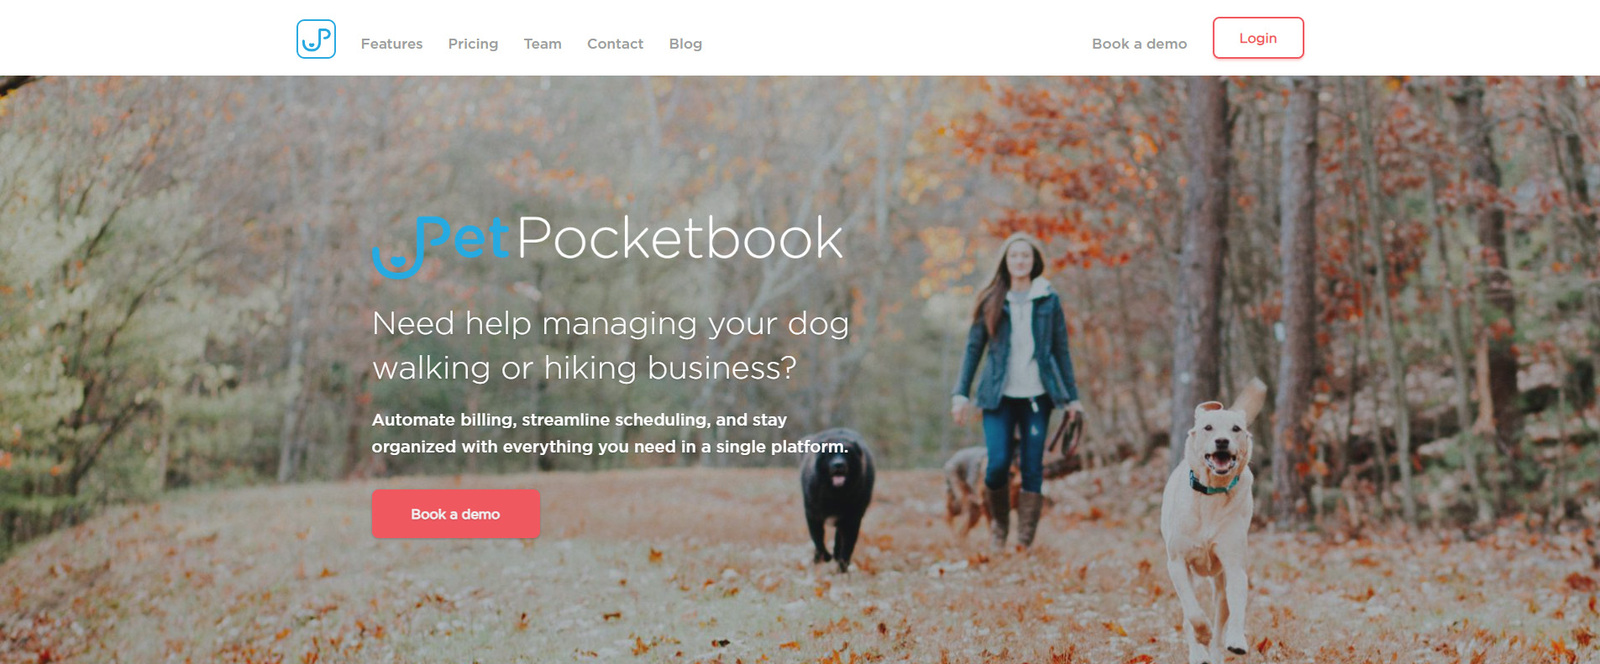 Visualização do PetPocketbook, uma das melhores opções de software de cuidados com animais de estimação para passeadores de animais de estimação.